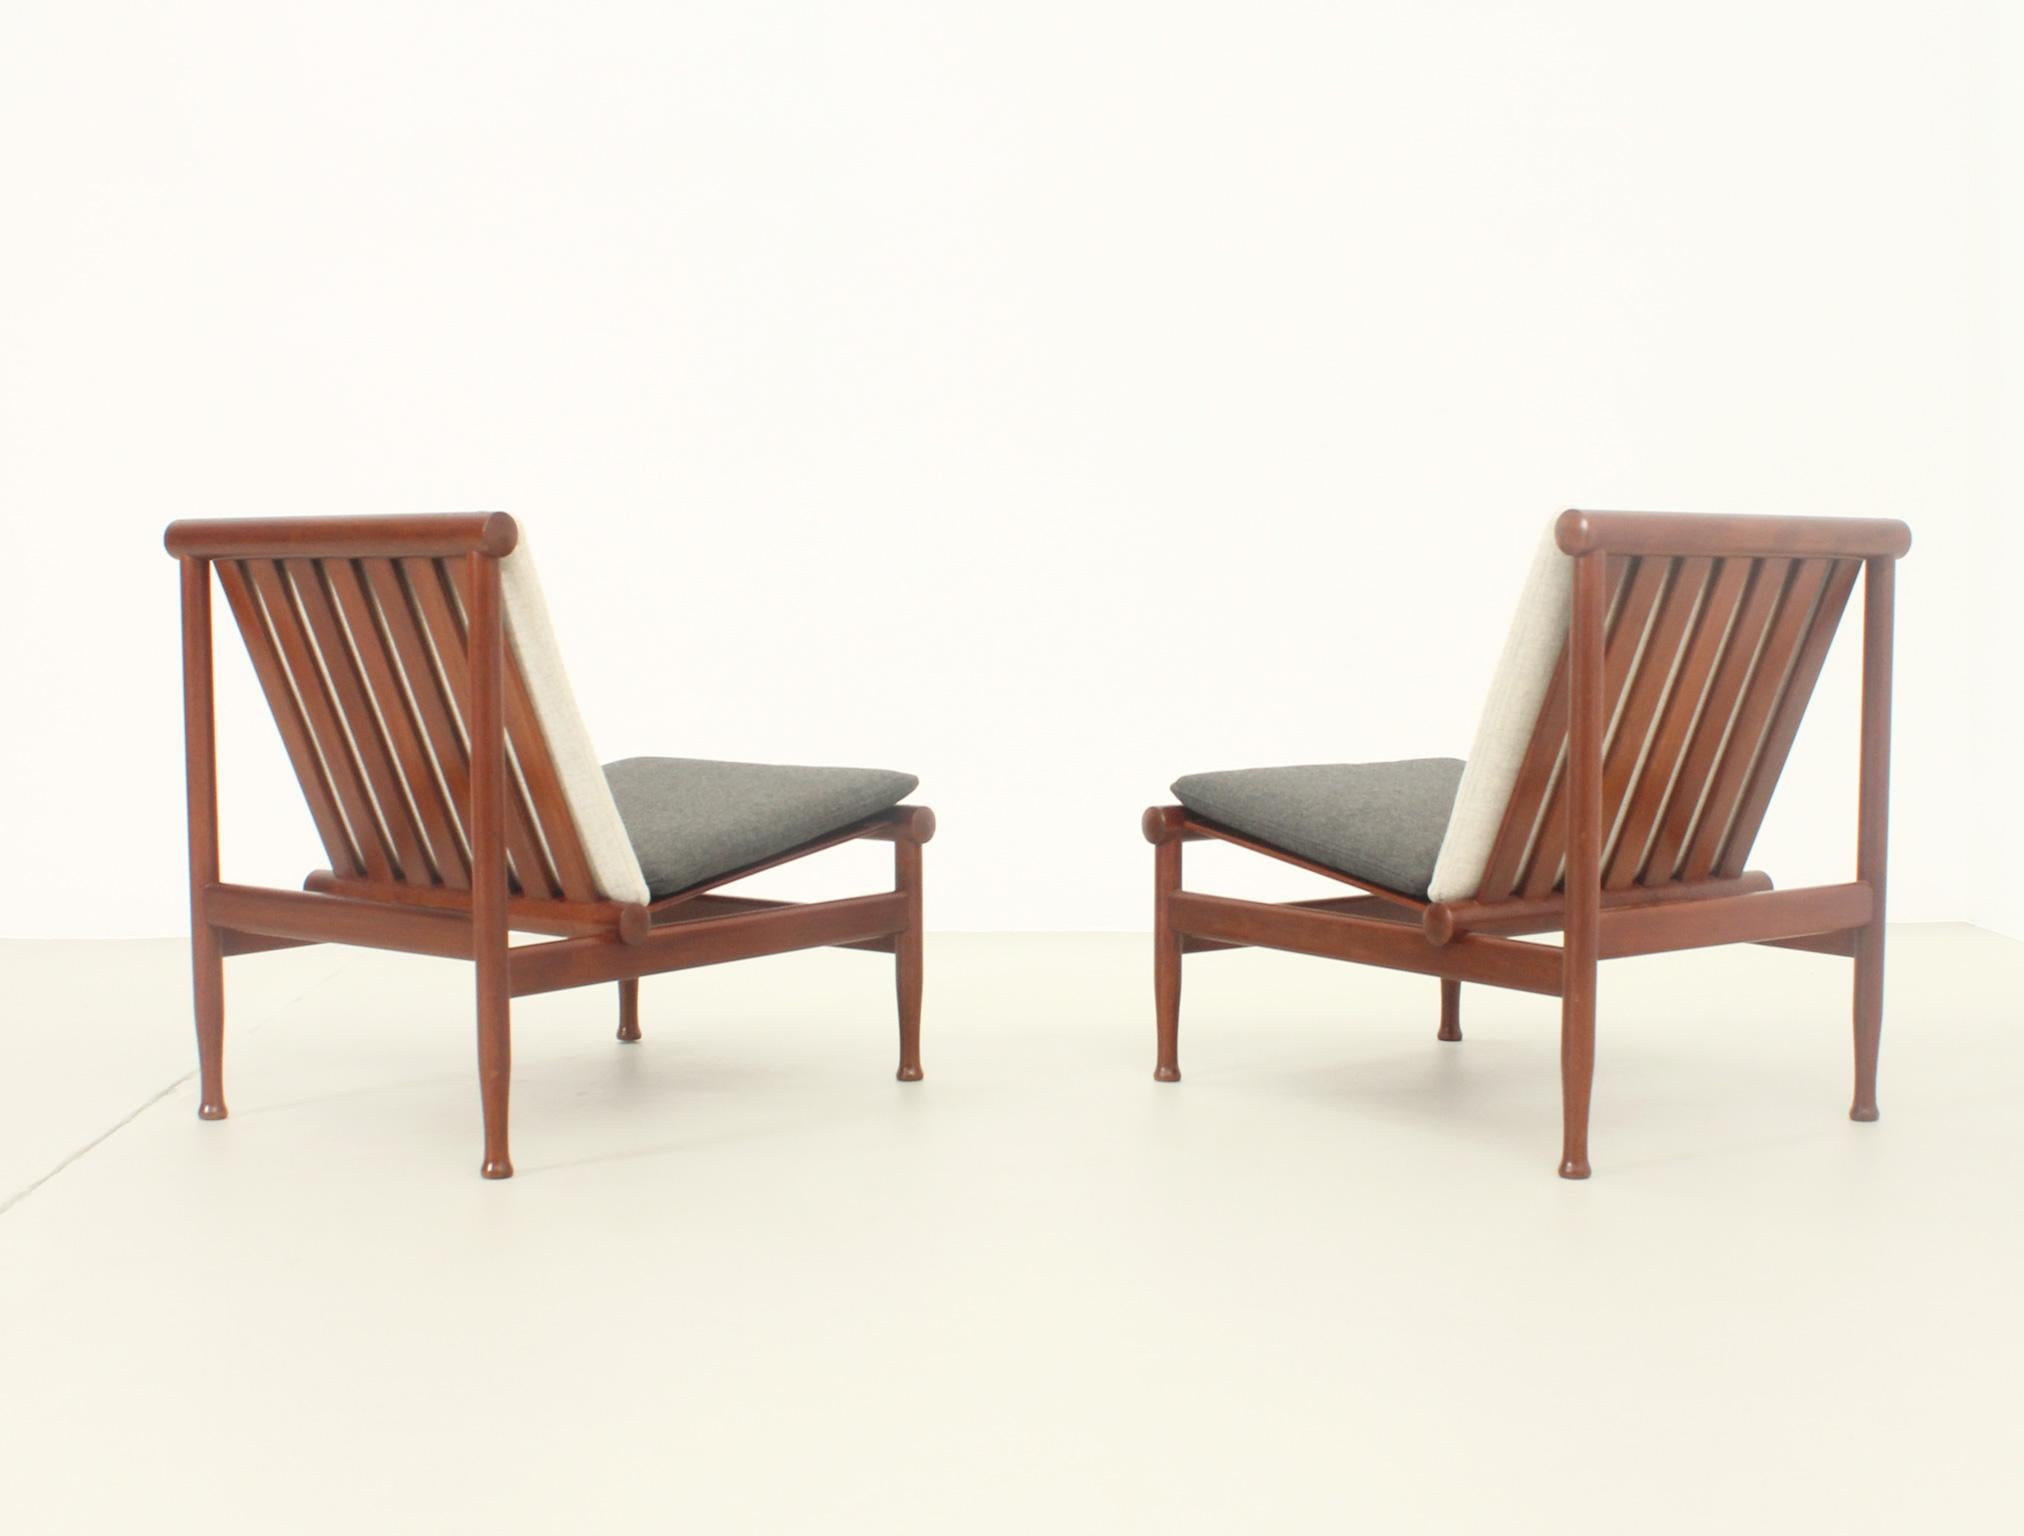 Japan Easy Chairs by Kai Lyngfeldt Larsen for Søborg, Denmark, 1950's For Sale 6